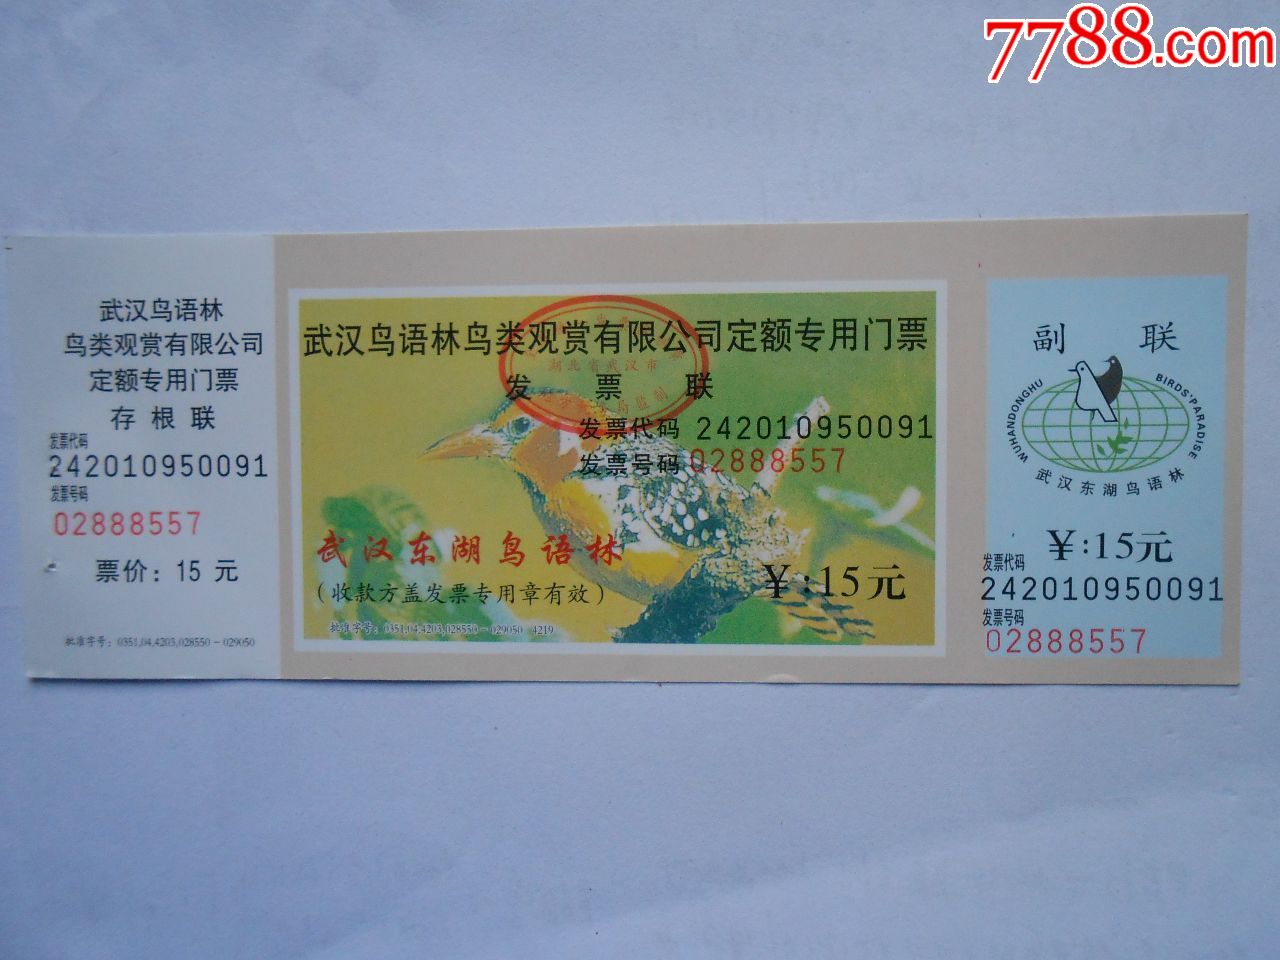 武汉东湖鸟语林-旅游景点门票-7788收藏